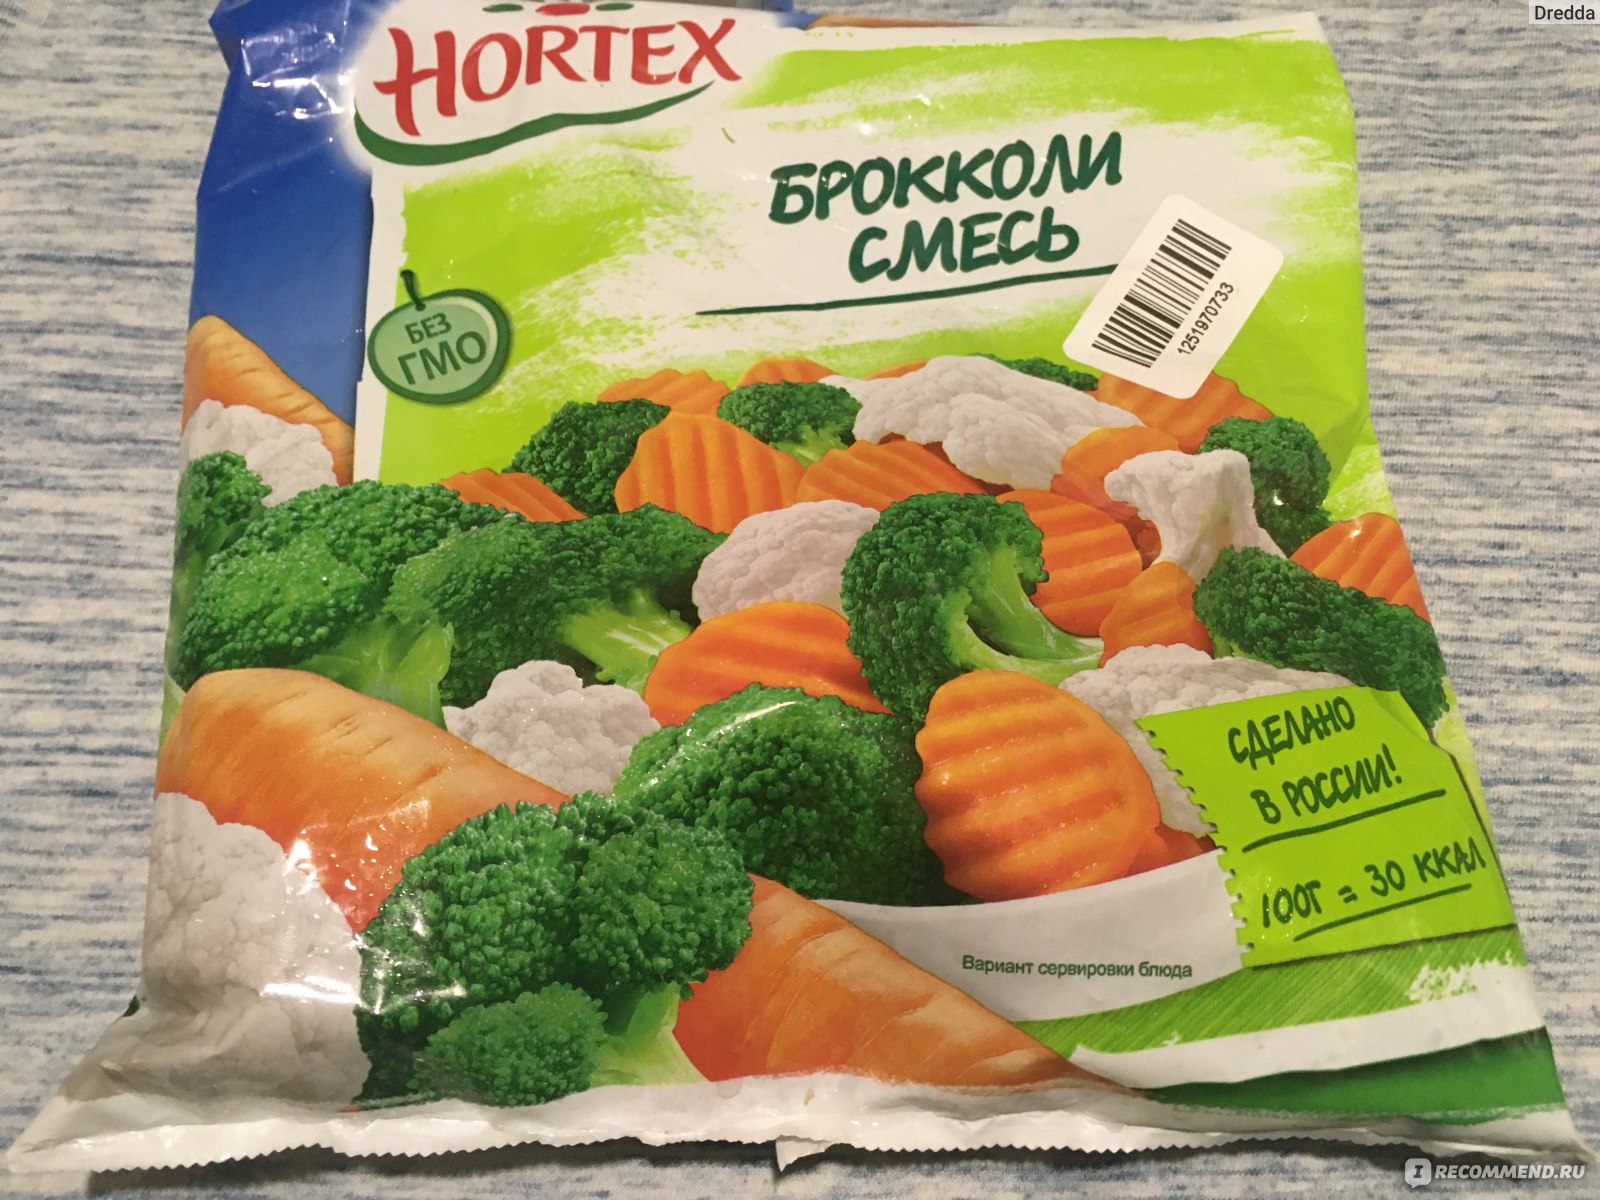 Замороженные овощи с соевым соусом. Брокколи смесь Хортекс. Овощная смесь Hortex. Хортекс брокколи замороженная. Овощная смесь Hortex брокколи.